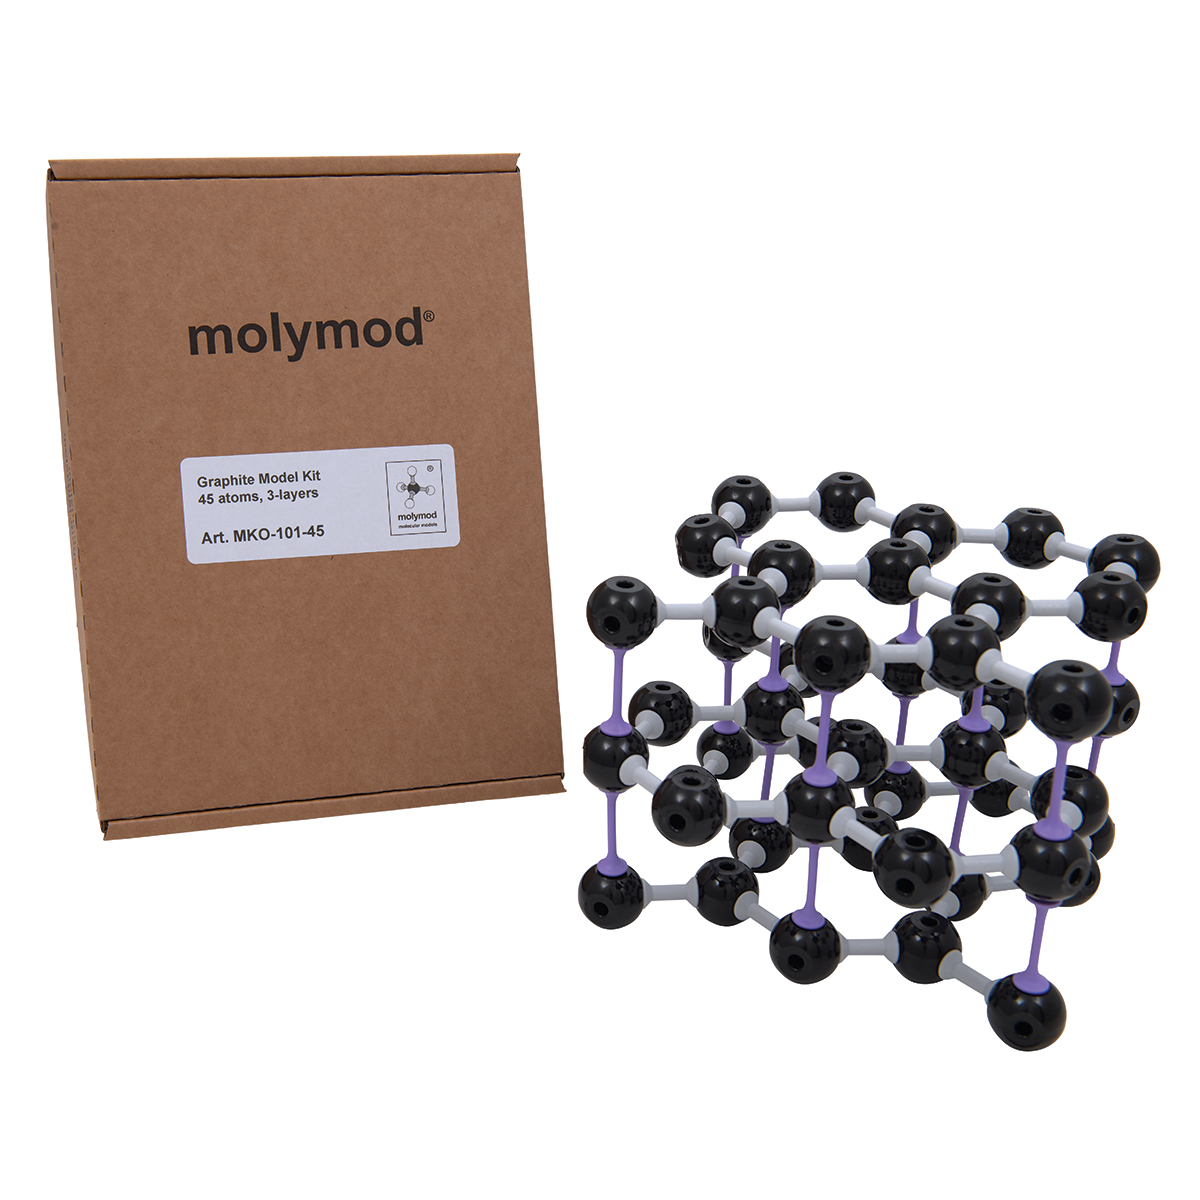 Kit de grafito, molymod® - 1005283 - W19707 - Molymod - MKO-101-45 - Modelos  moleculares - 3B Scientific